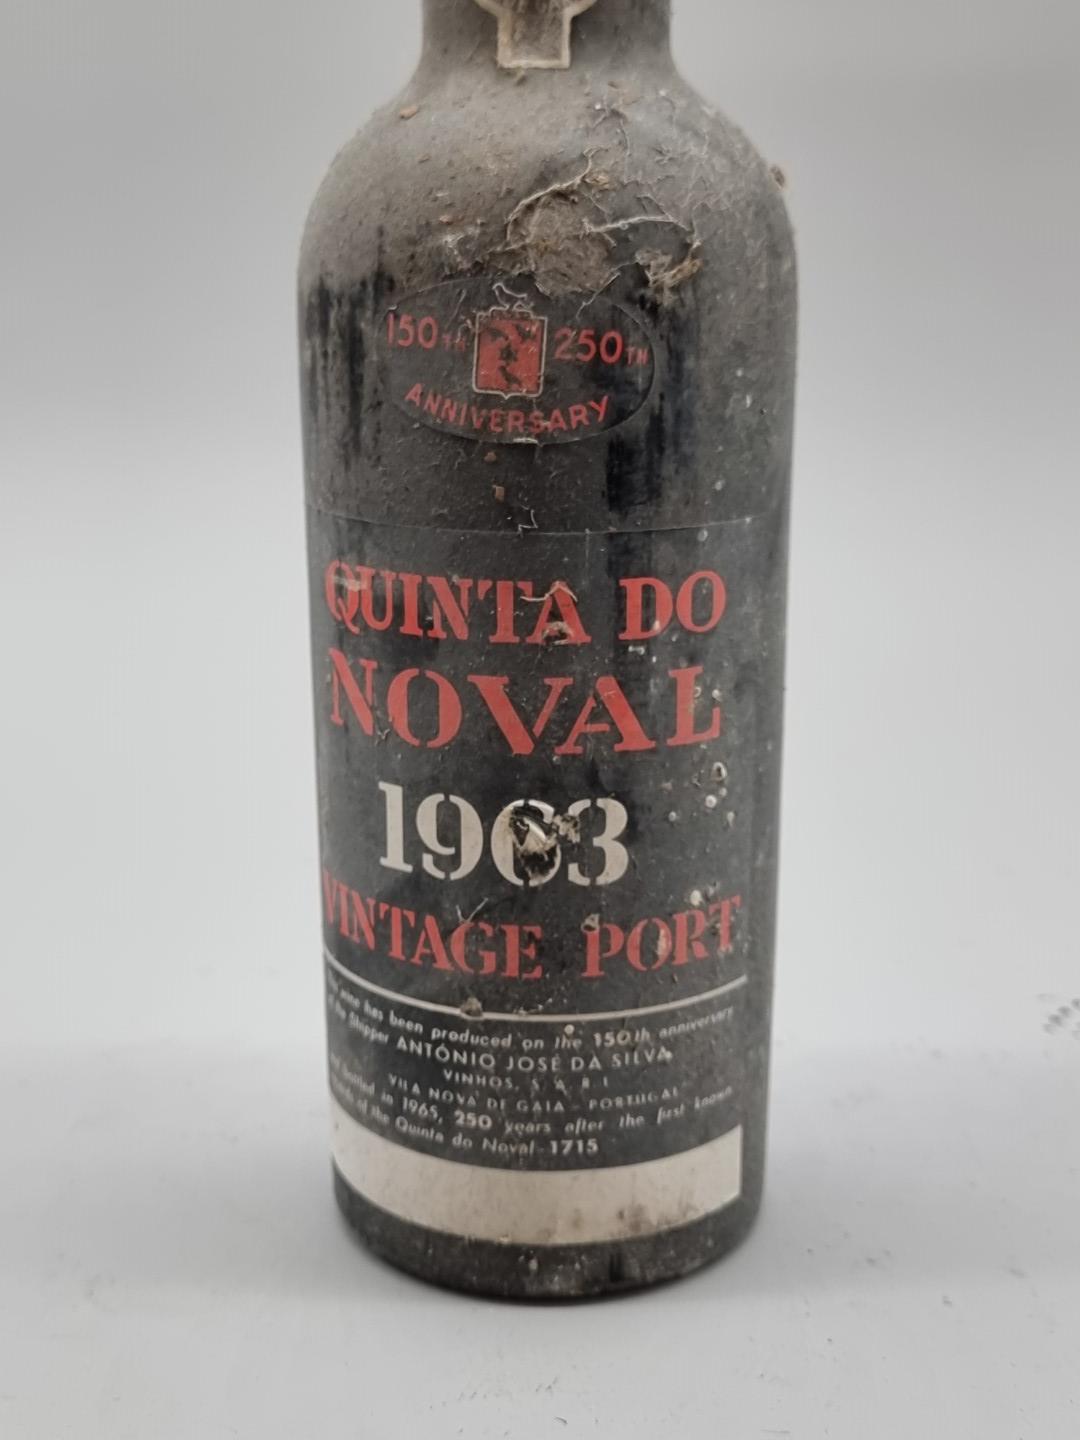 A bottle of Quinta Do Noval 1963 Vintage Port. - Image 2 of 6